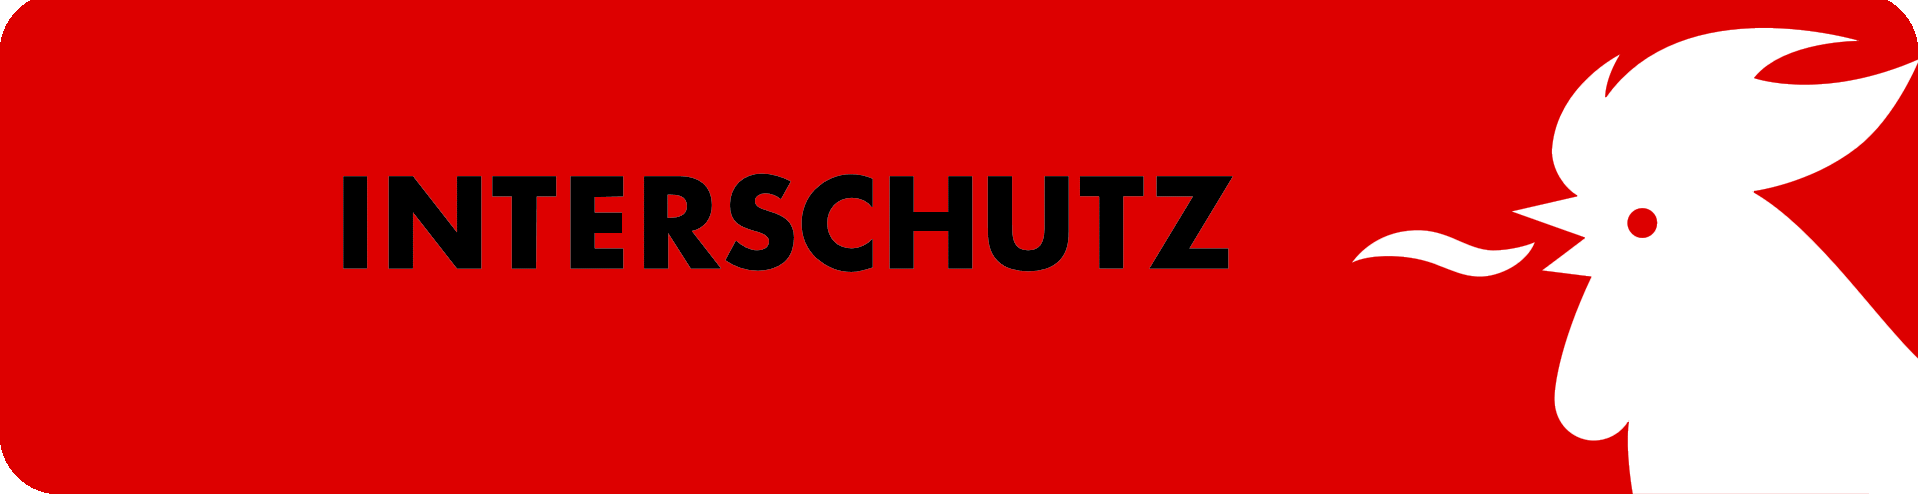 interschutz conference logo